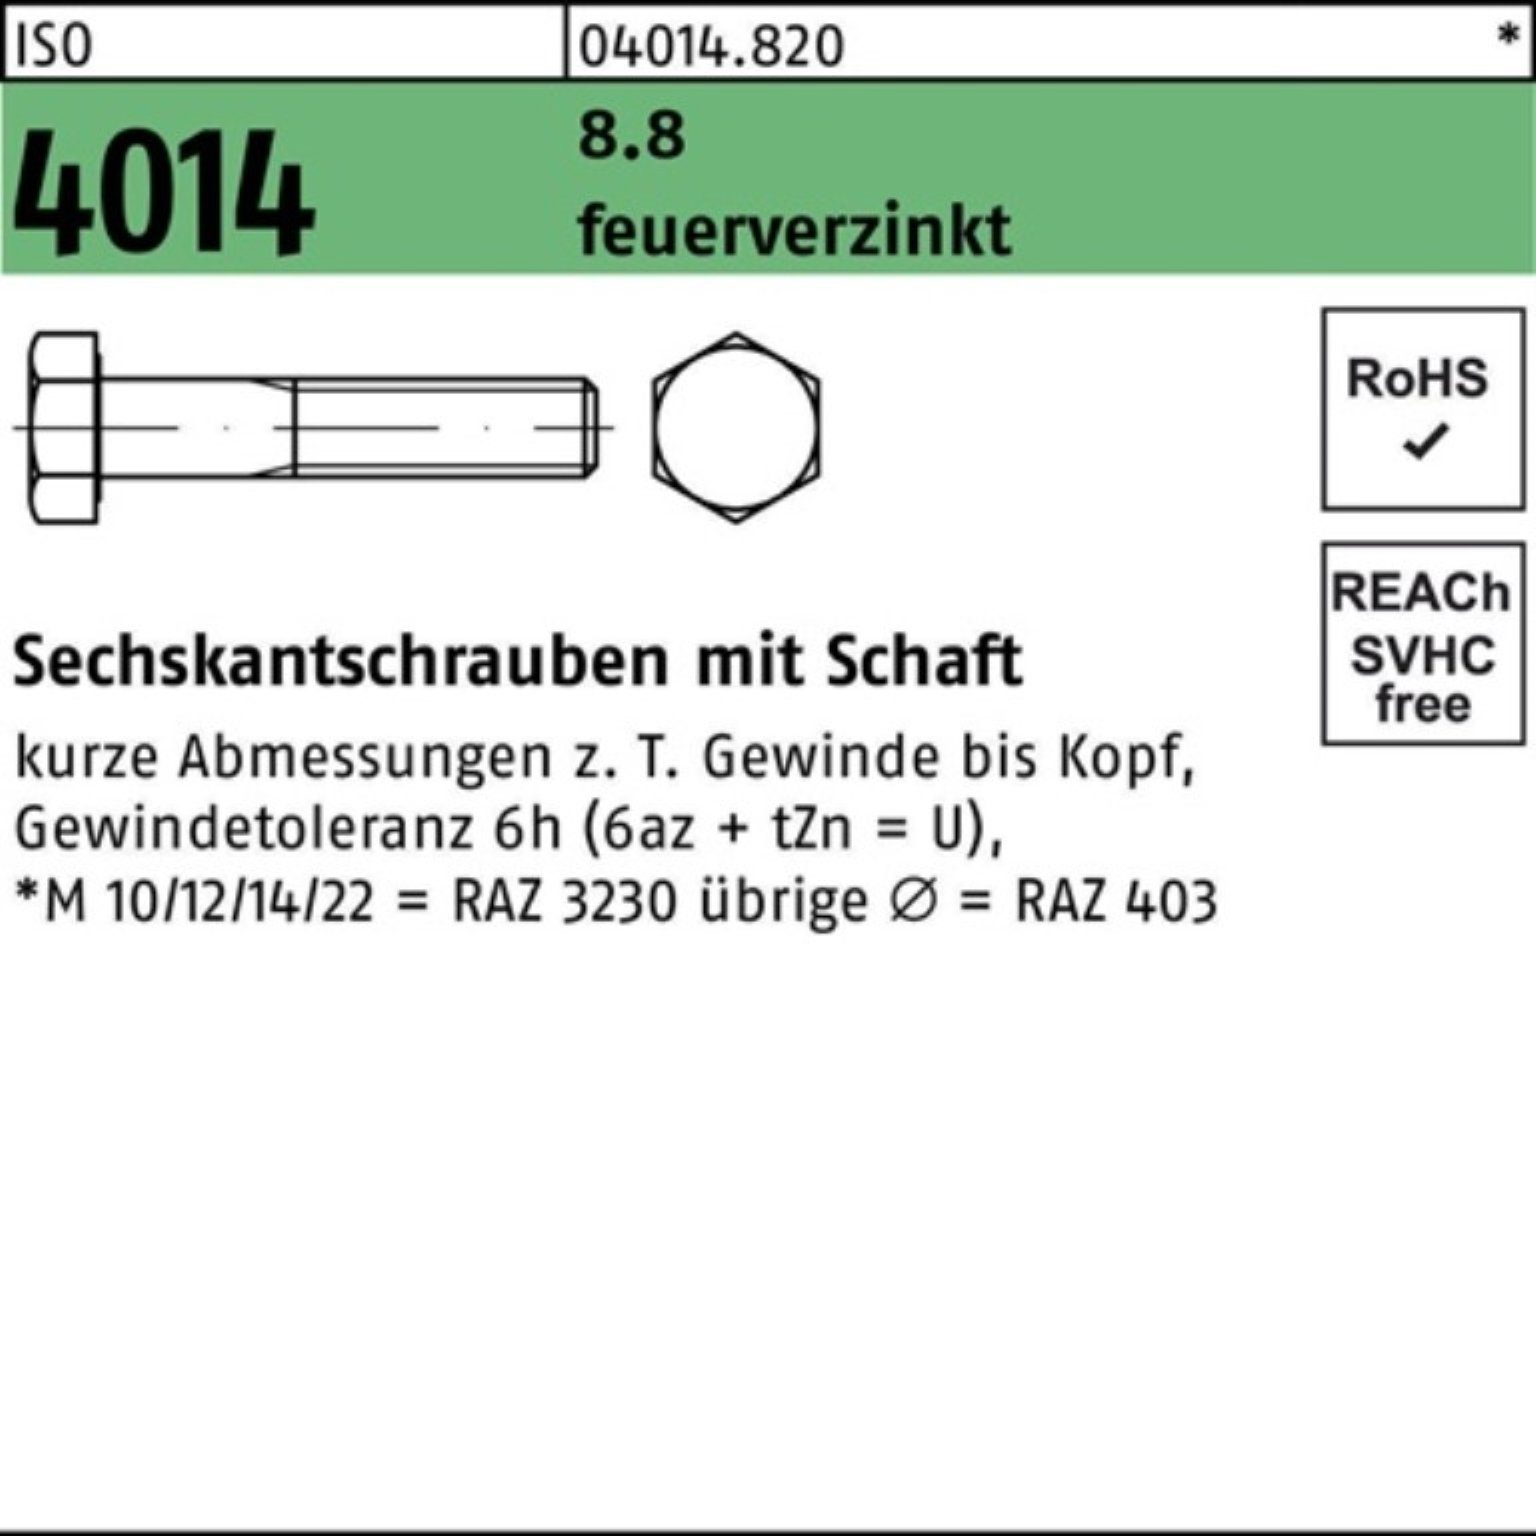 Bufab Sechskantschraube 100er Pack Sechskantschraube ISO 4014 Schaft M16x 70 8.8 feuerverz. 25